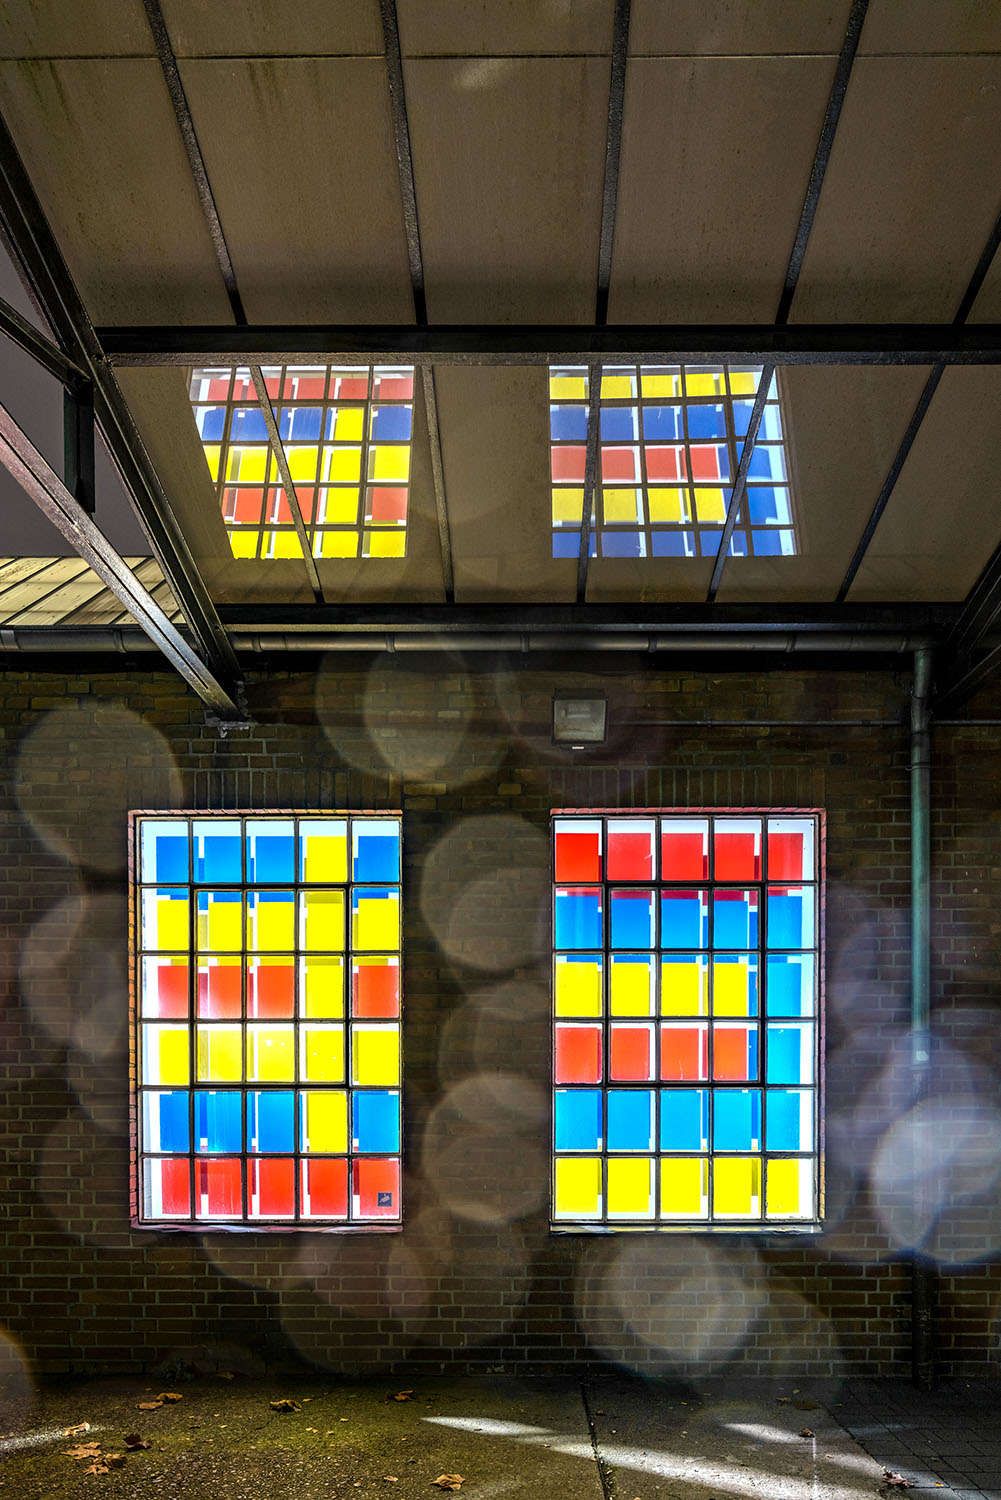 Farb  Licht  Spiel - Installation von Nikola Dimitrov & Norbert Thomas im Verein für aktuelle Kunst / Ruhrgebiet, Oberhausen